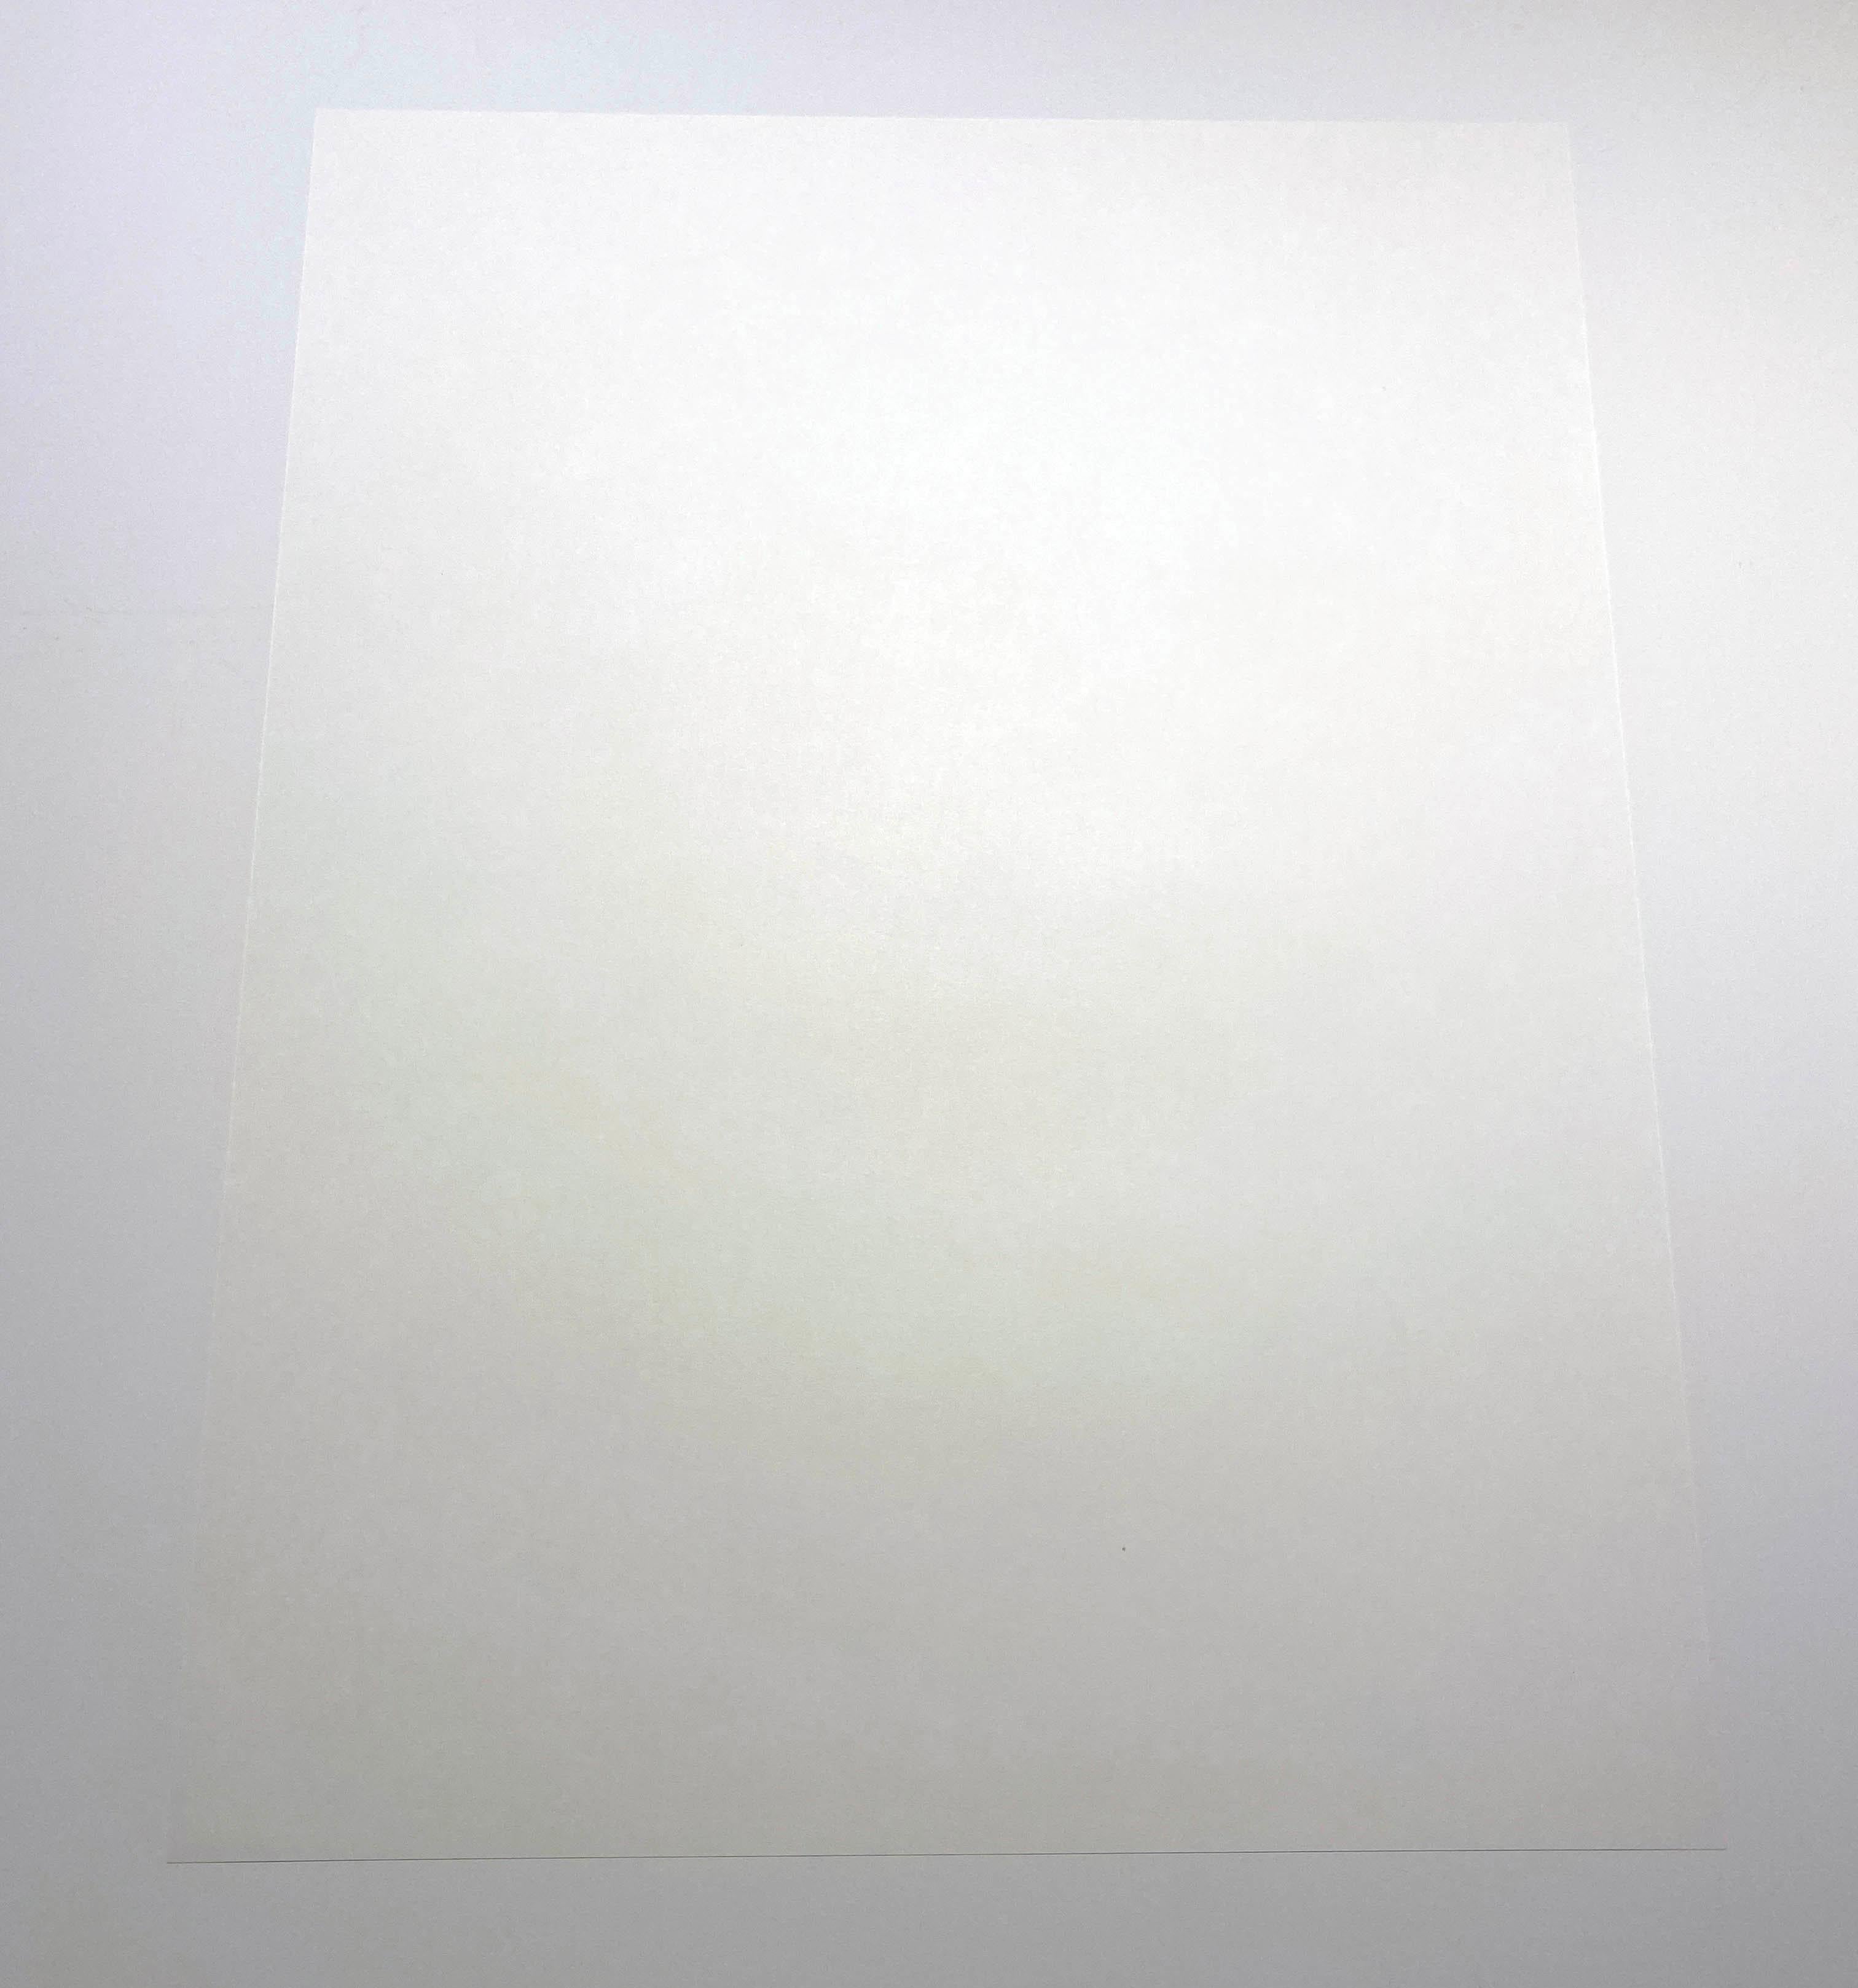 Takashi Murakami
Signal; 2015
Offsetlithographie in Farben auf Velinpapier
27 x 20 3/4 Zoll
Nummeriert aus der Auflage von 300 Stück in der unteren rechten Ecke
Signiert vom Künstler in der unteren rechten Ecke
Herausgegeben von Kaikai Kiki Co. in